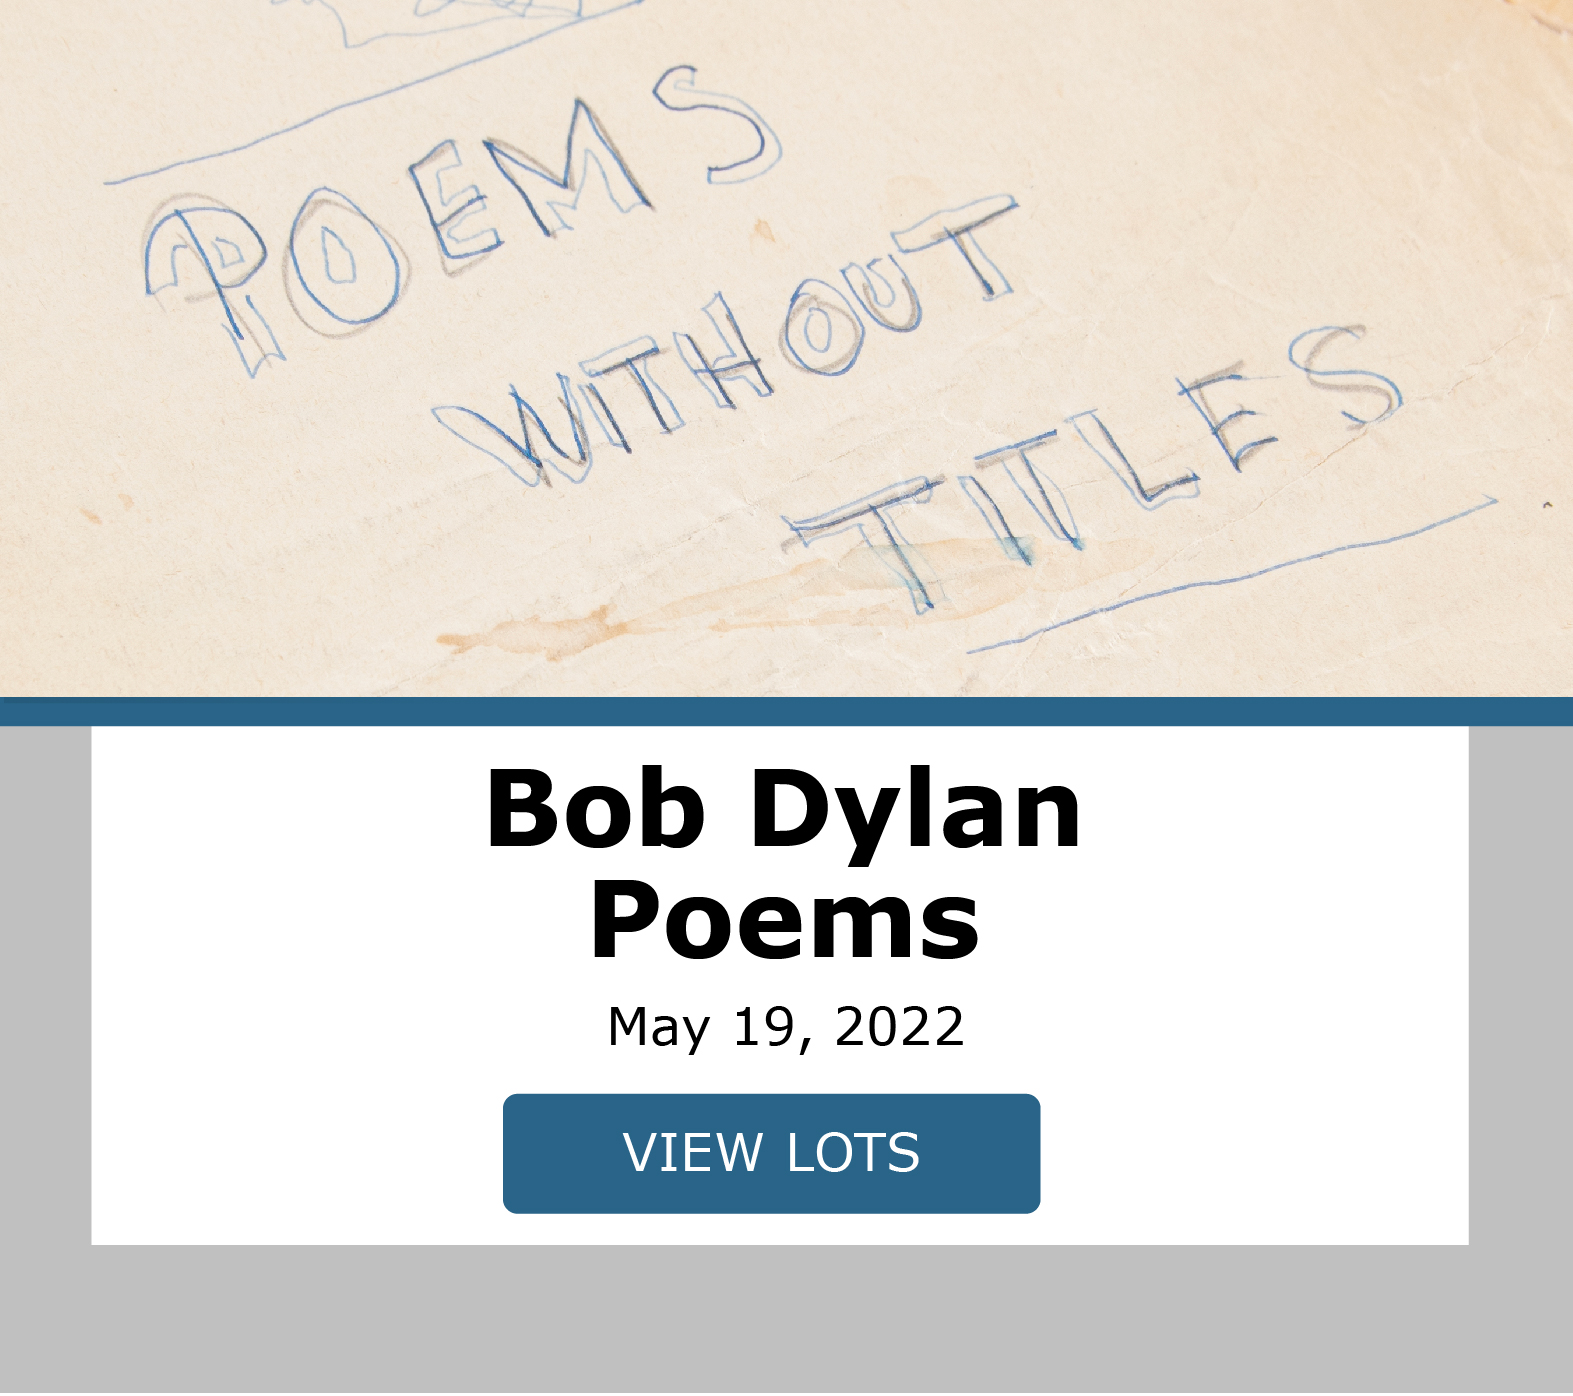 Bob Dylan Poems. Bidding closes May 19th. Bid now!